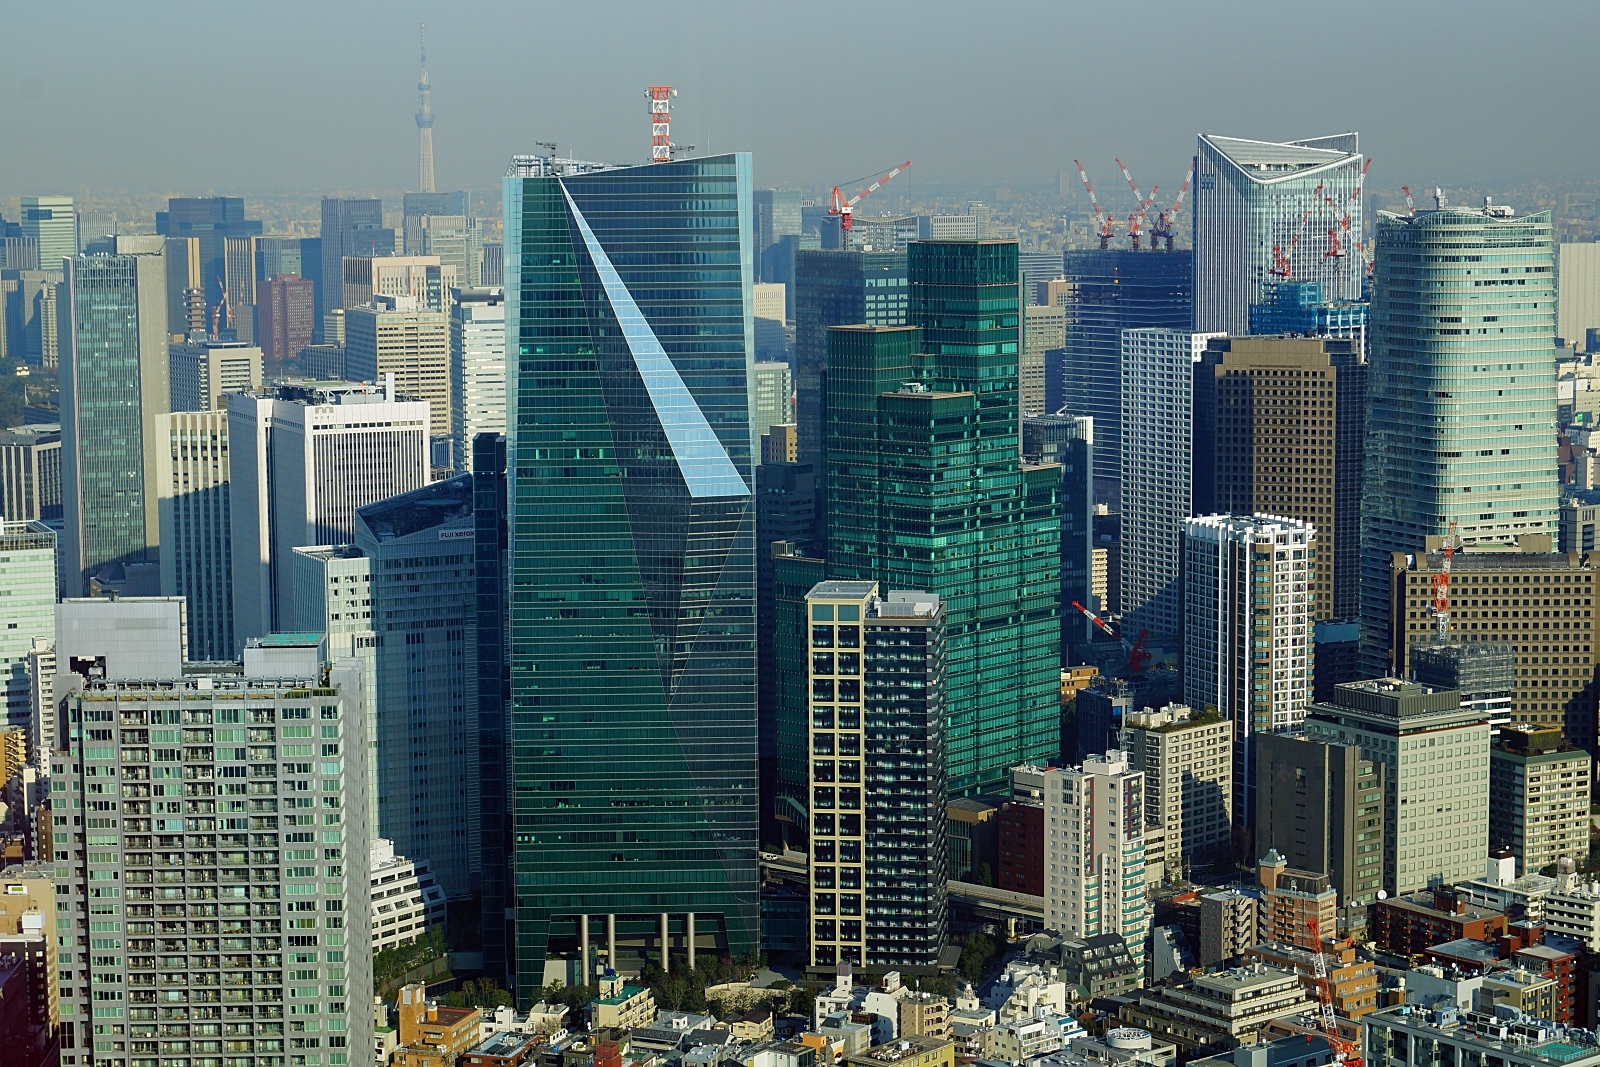 六本木ヒルズ森タワー展望台 東京シティビュー から見た東京都心の超高層ビル群 19 風景写真